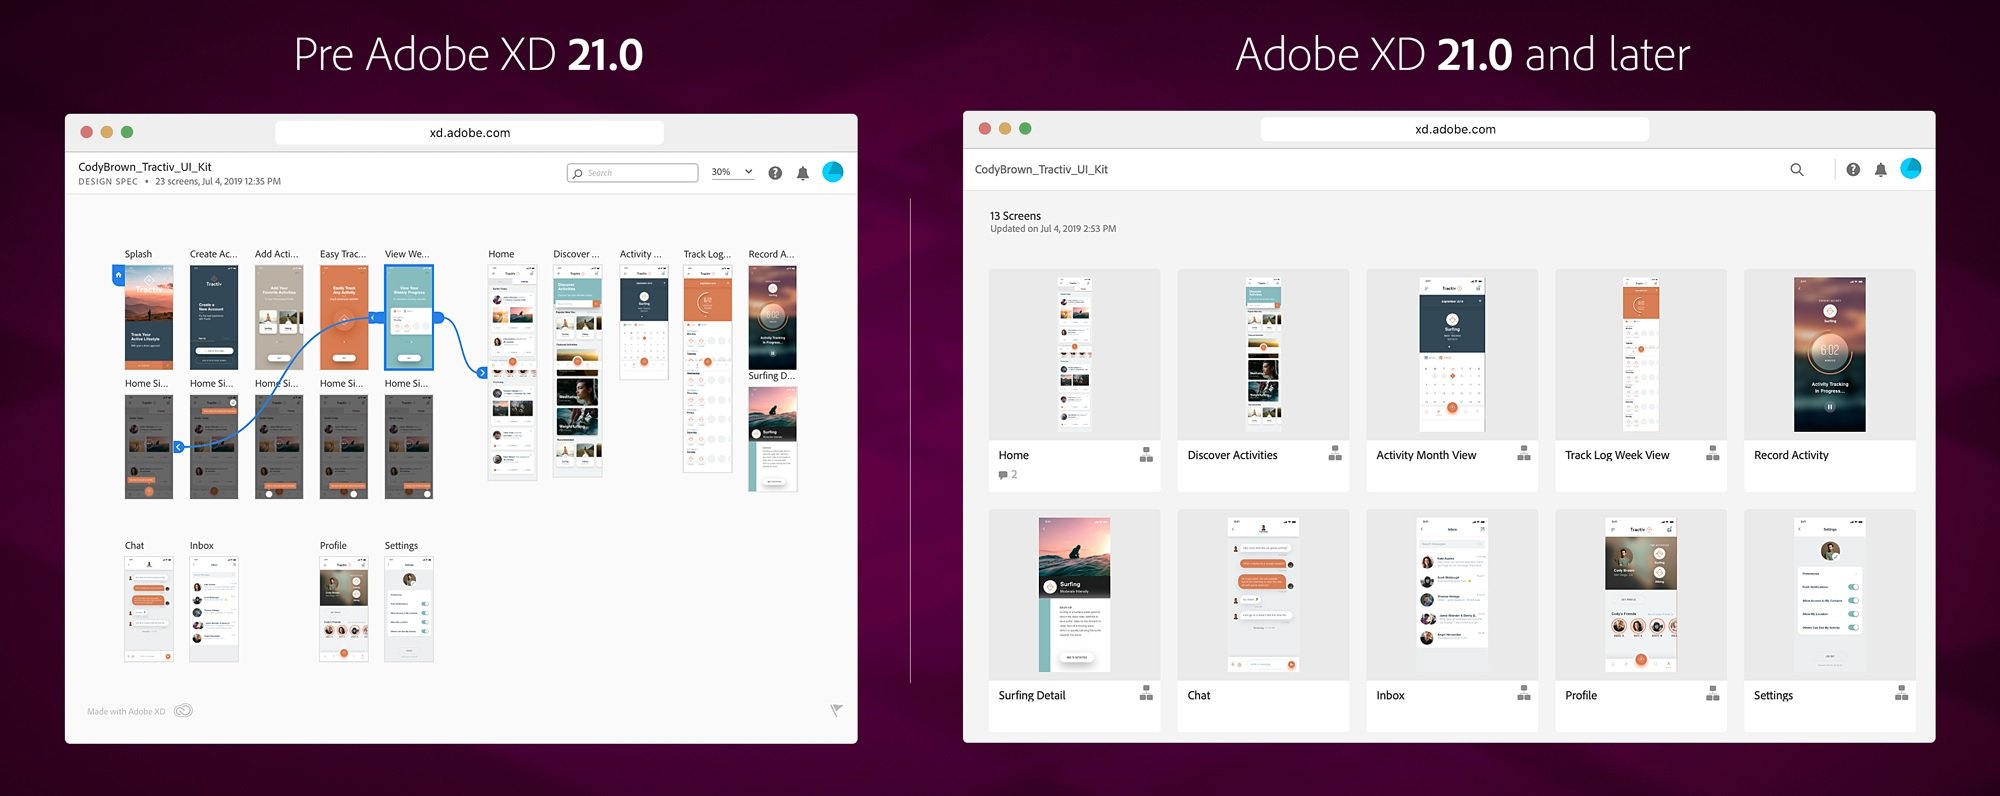 O Adobe XD é um dos softwares utilizados pelos profissionais da área